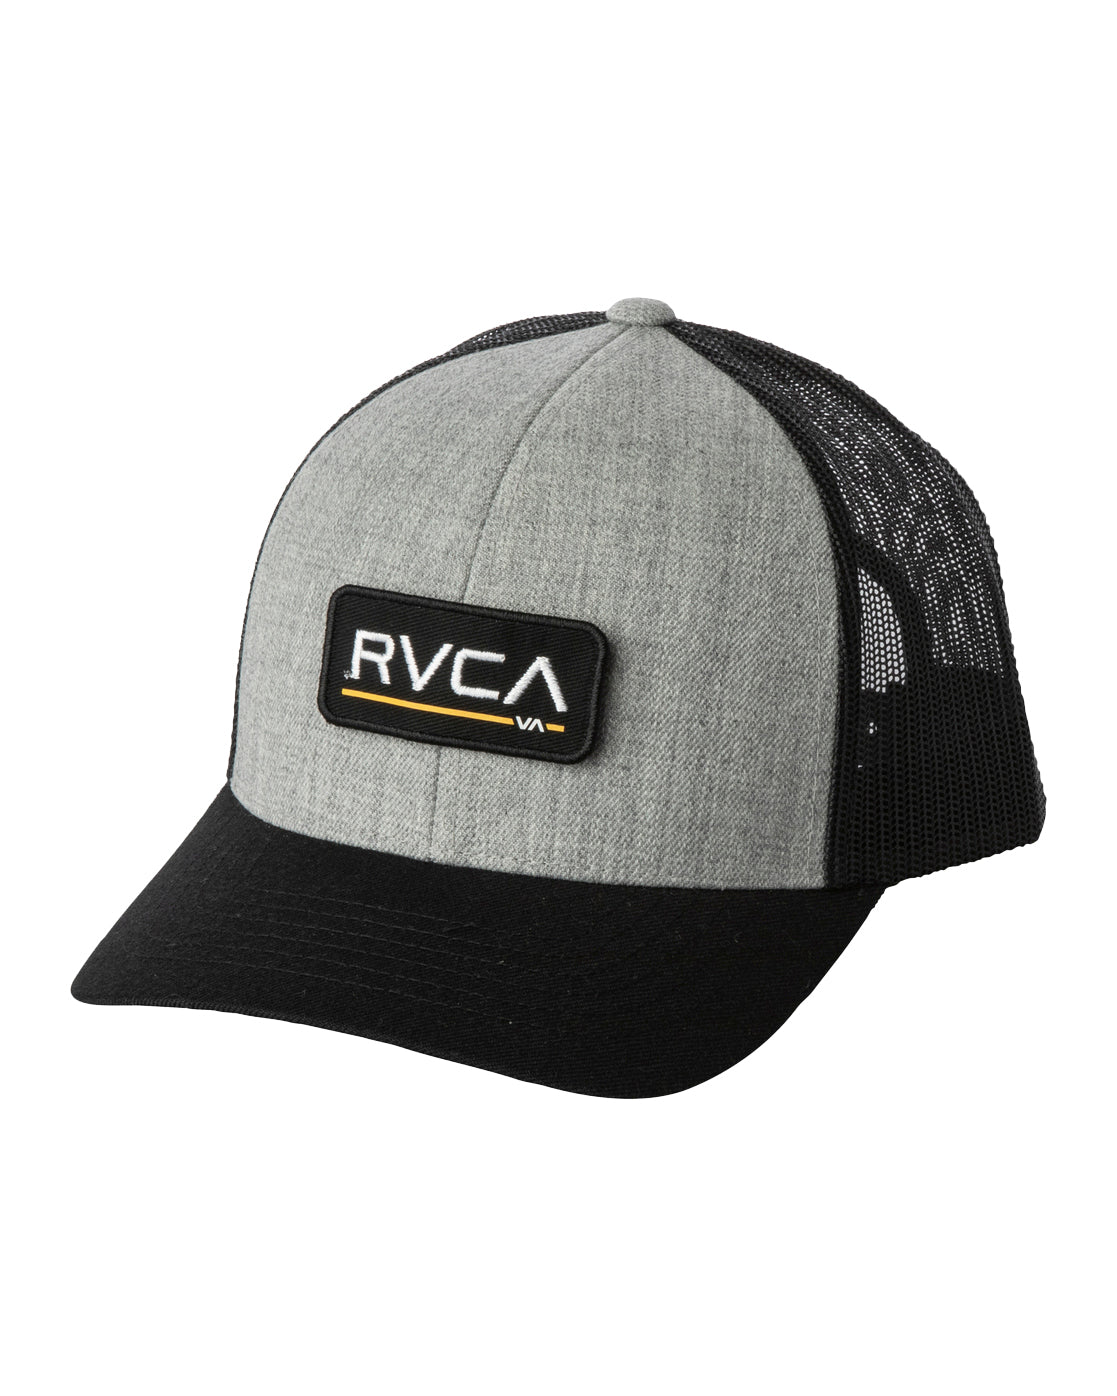 RVCA Boys Ticket Trucker Hat HYL OS